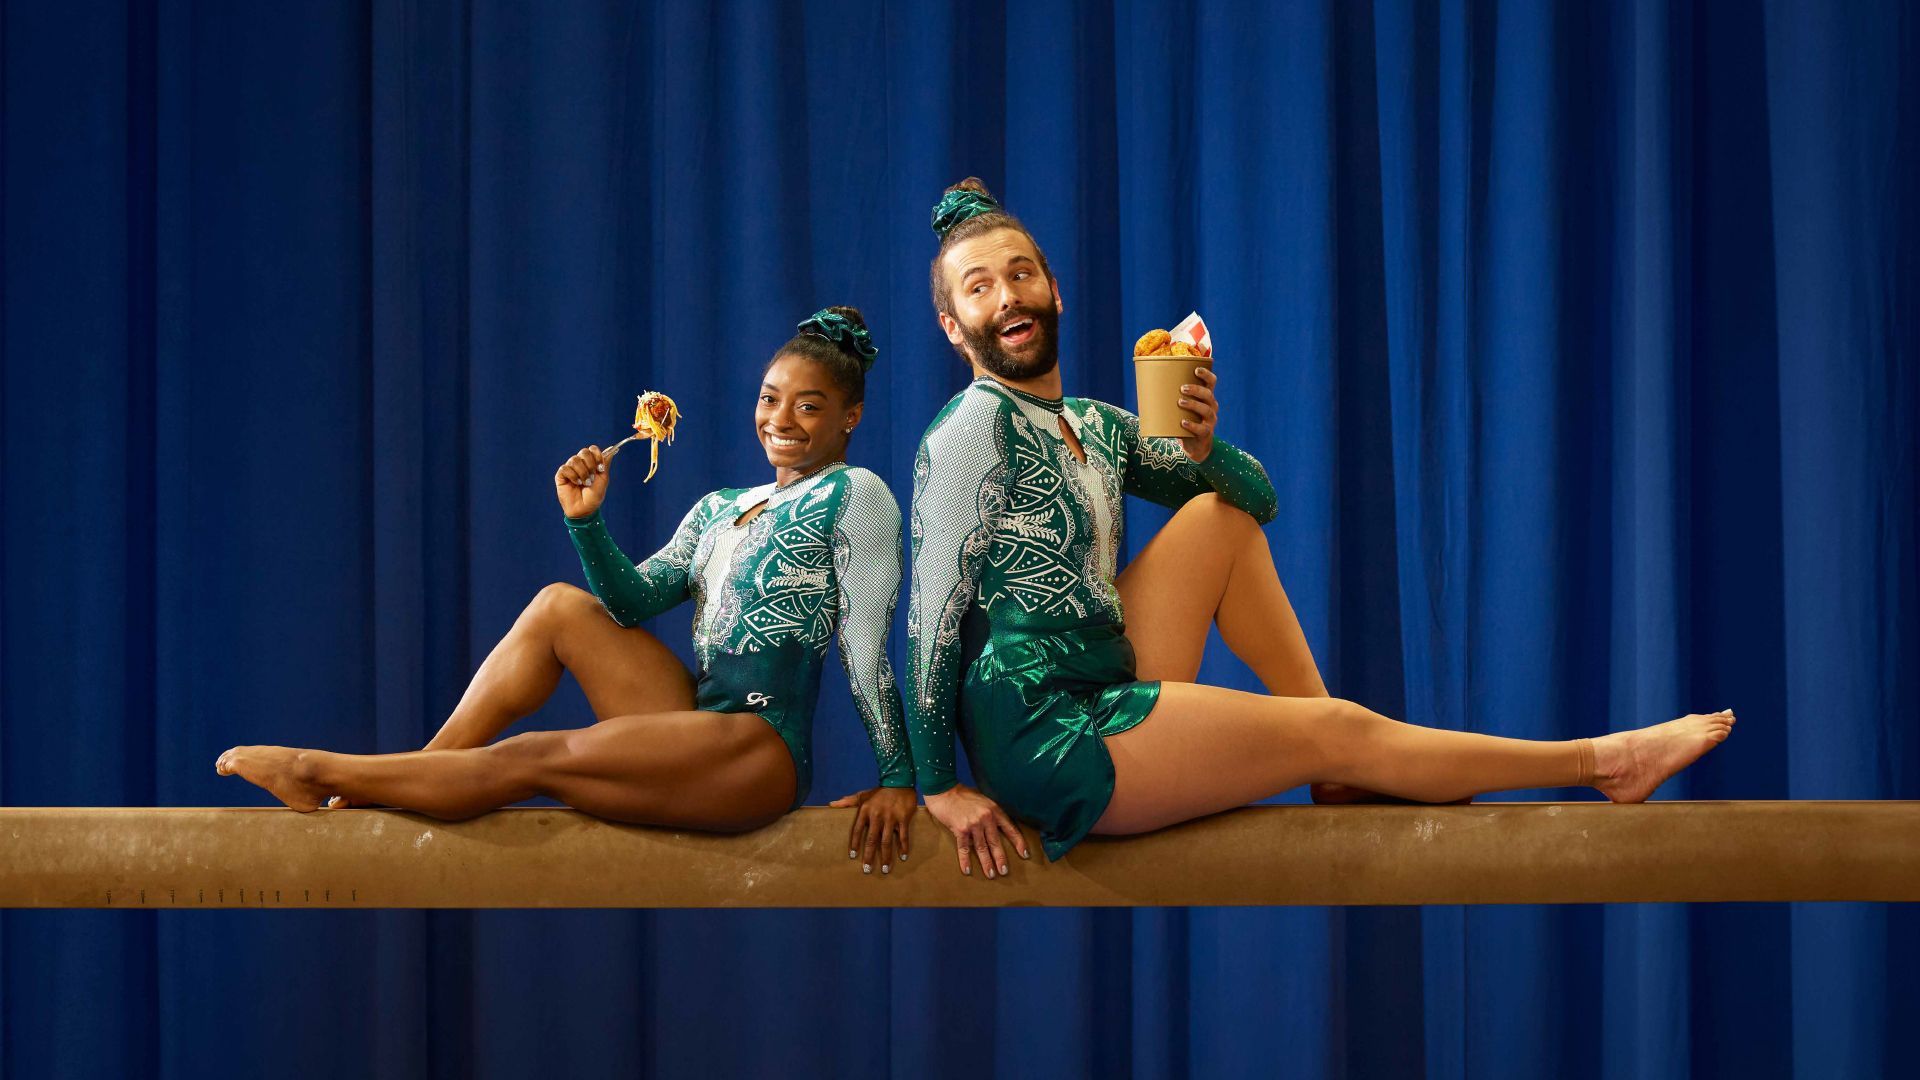 Simone Biles and Jonathan Van Ness on Gymnastics, Takeout, and the 2021 Tokyo Olympics